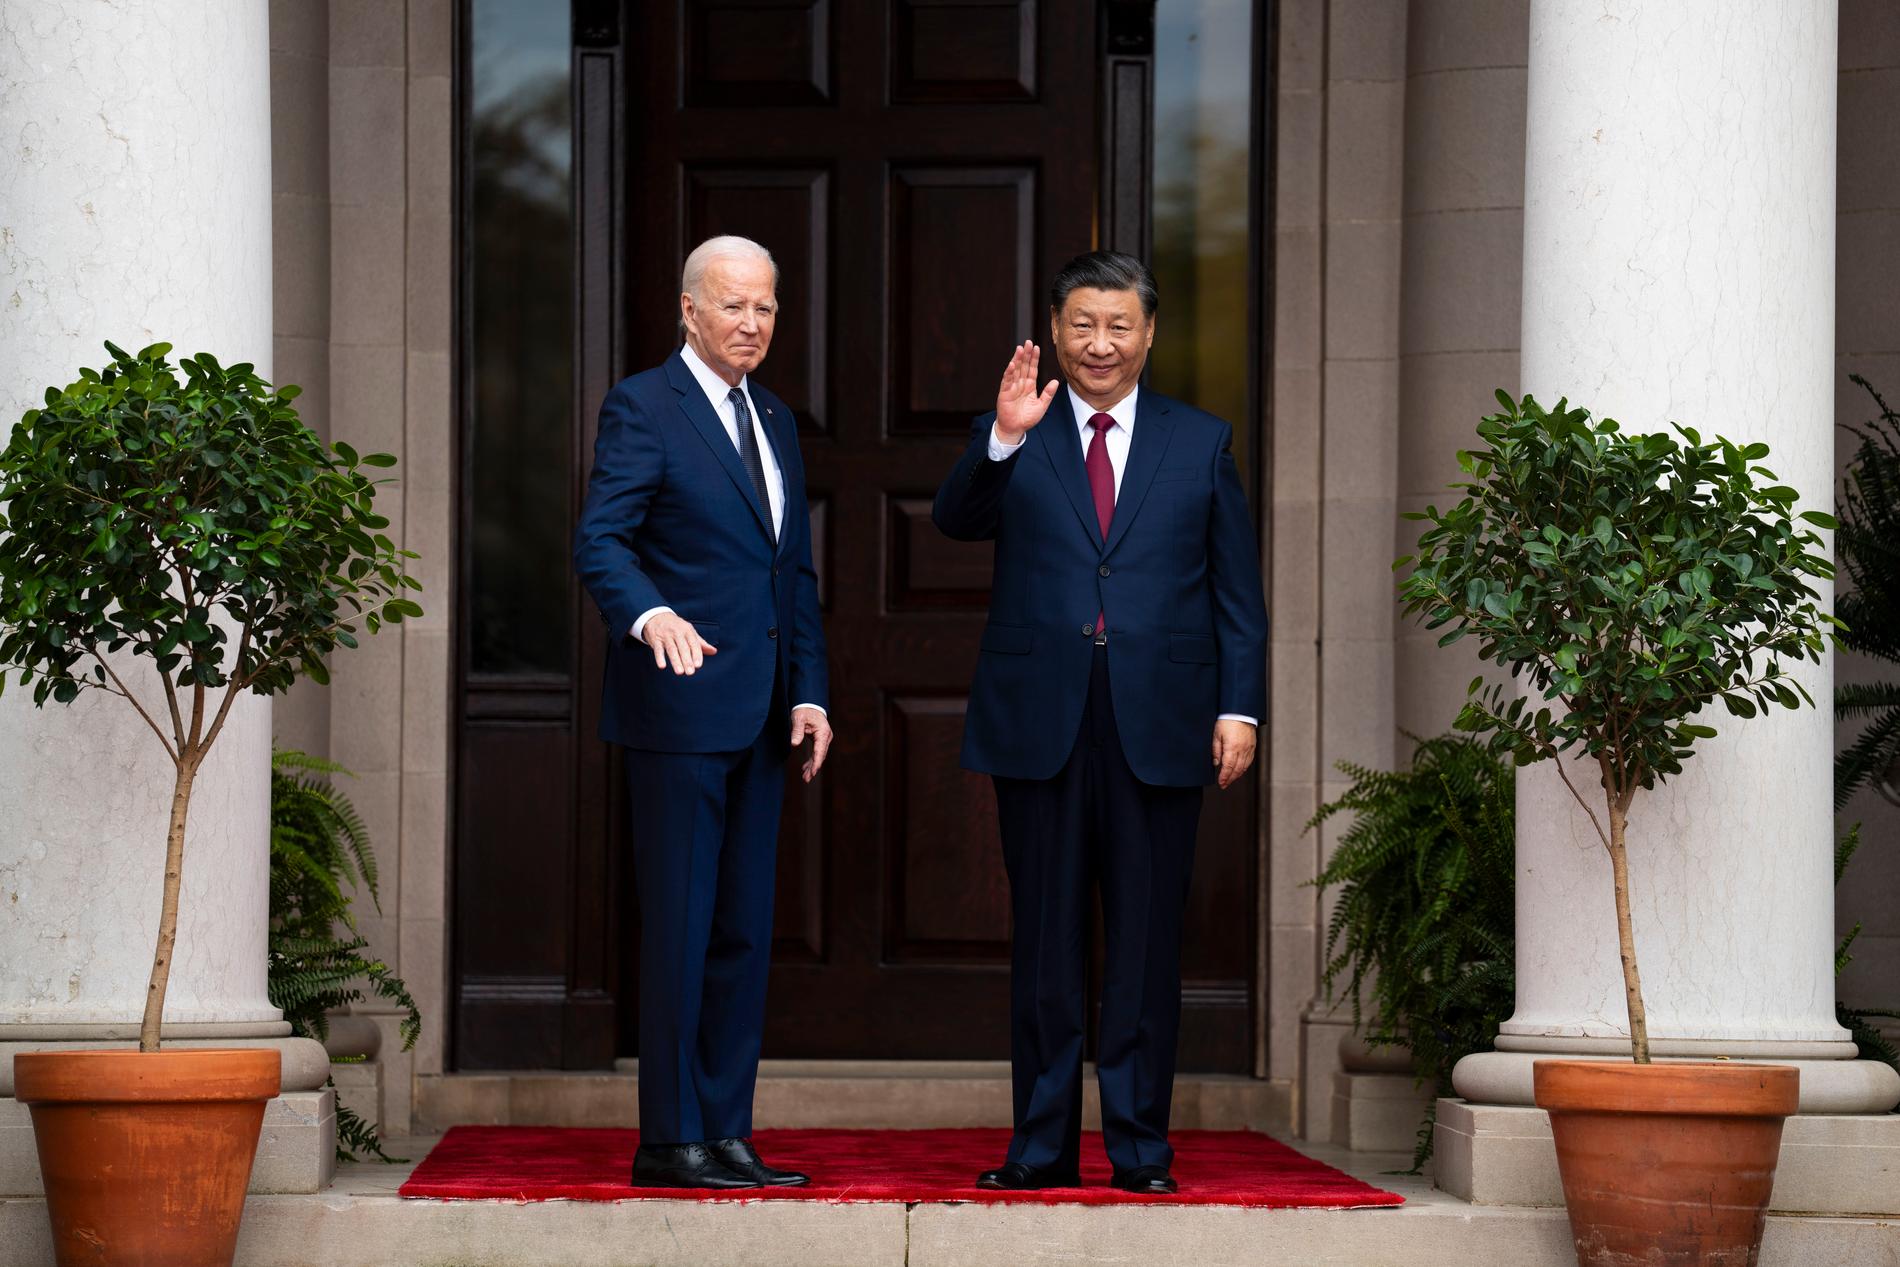 Xi and Biden exchange congratulations